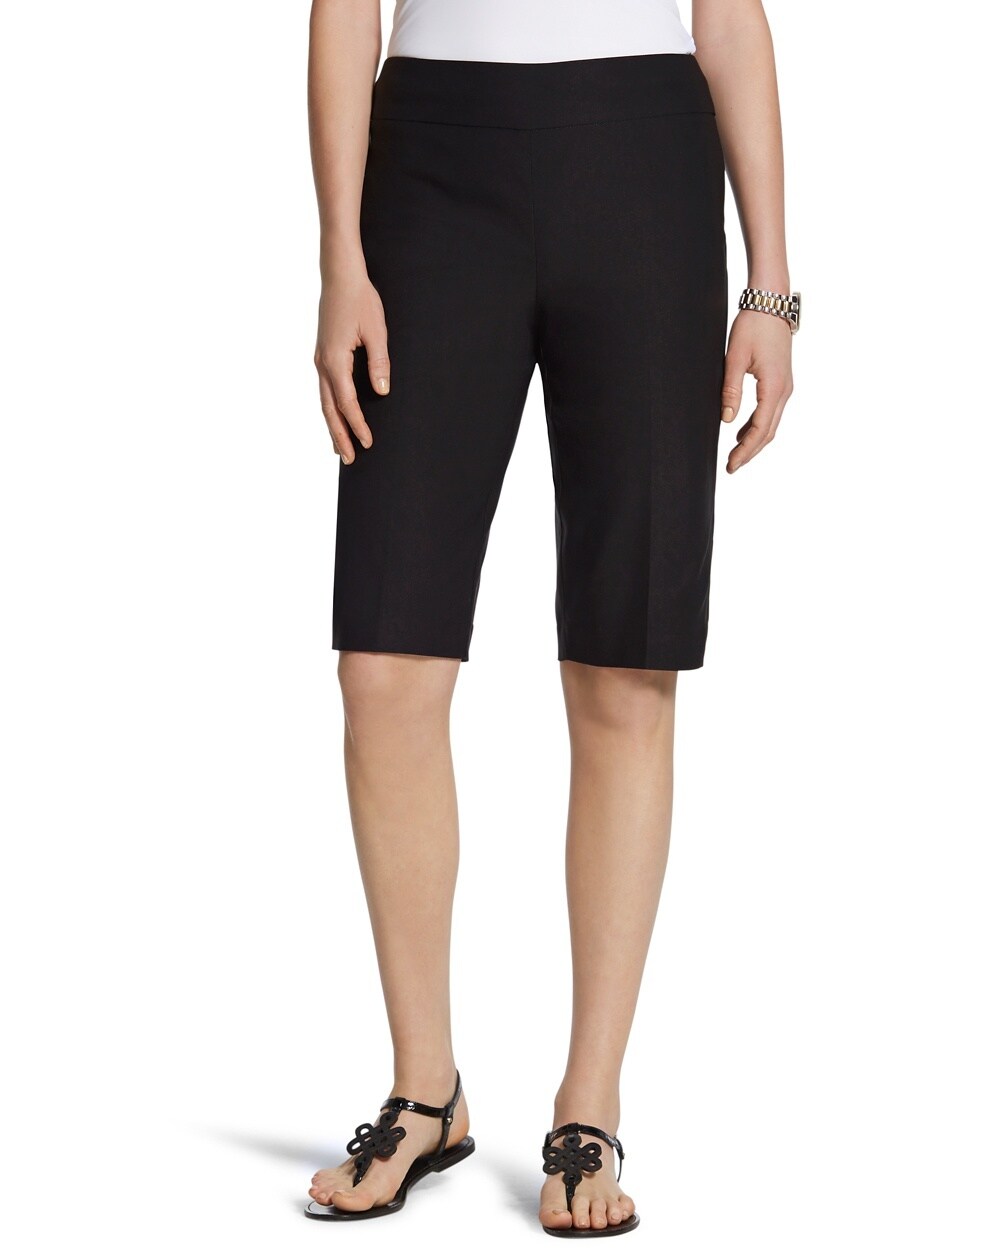 So Slimming Brigitte Shorts in Black -11 Inch Inseam